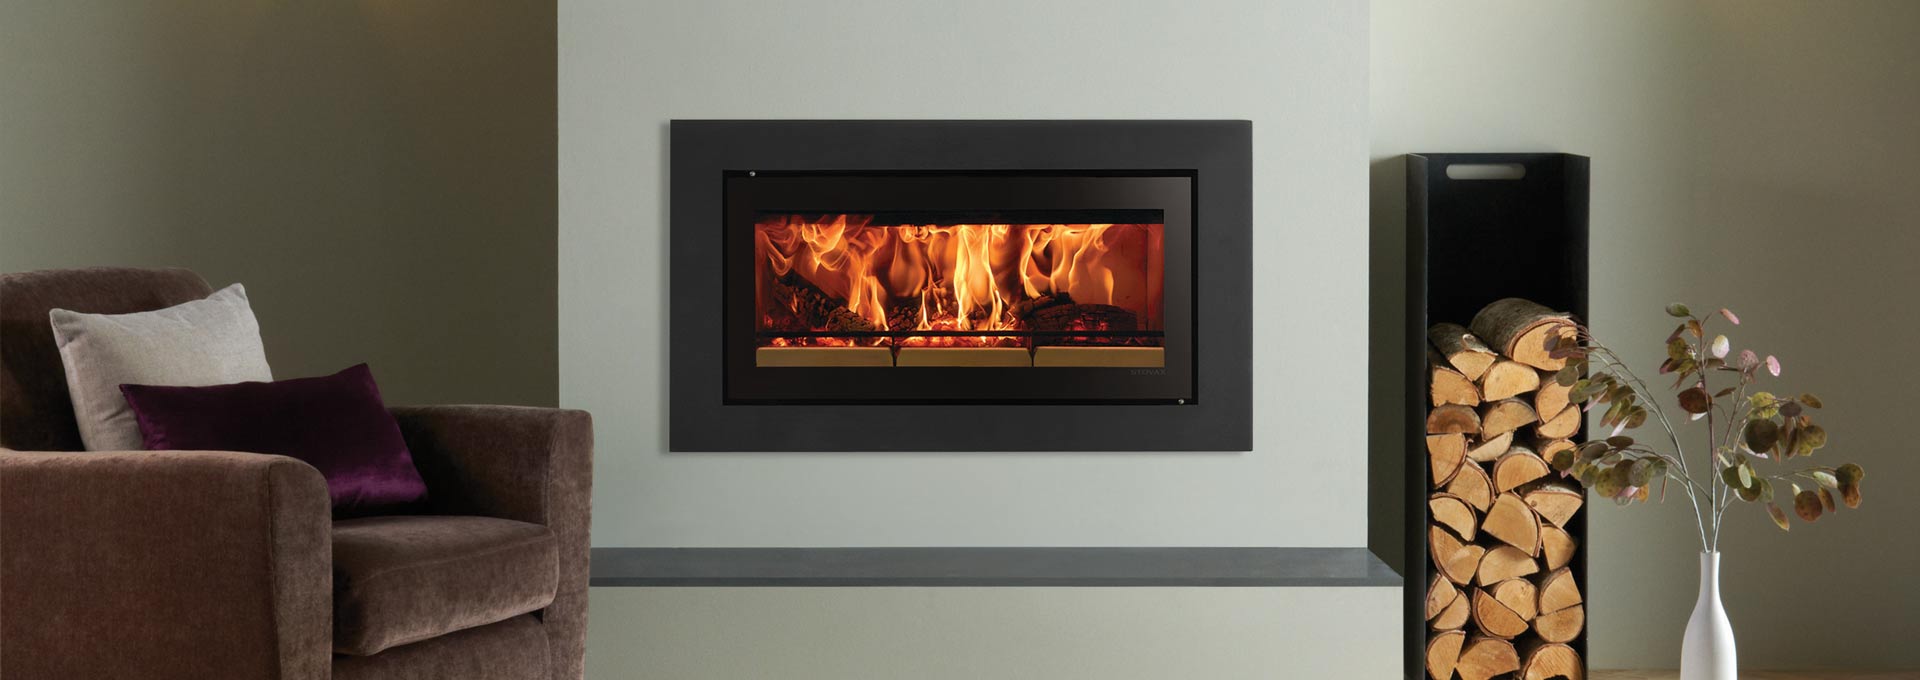 STV2C-fireplace-steelXS-1920x680